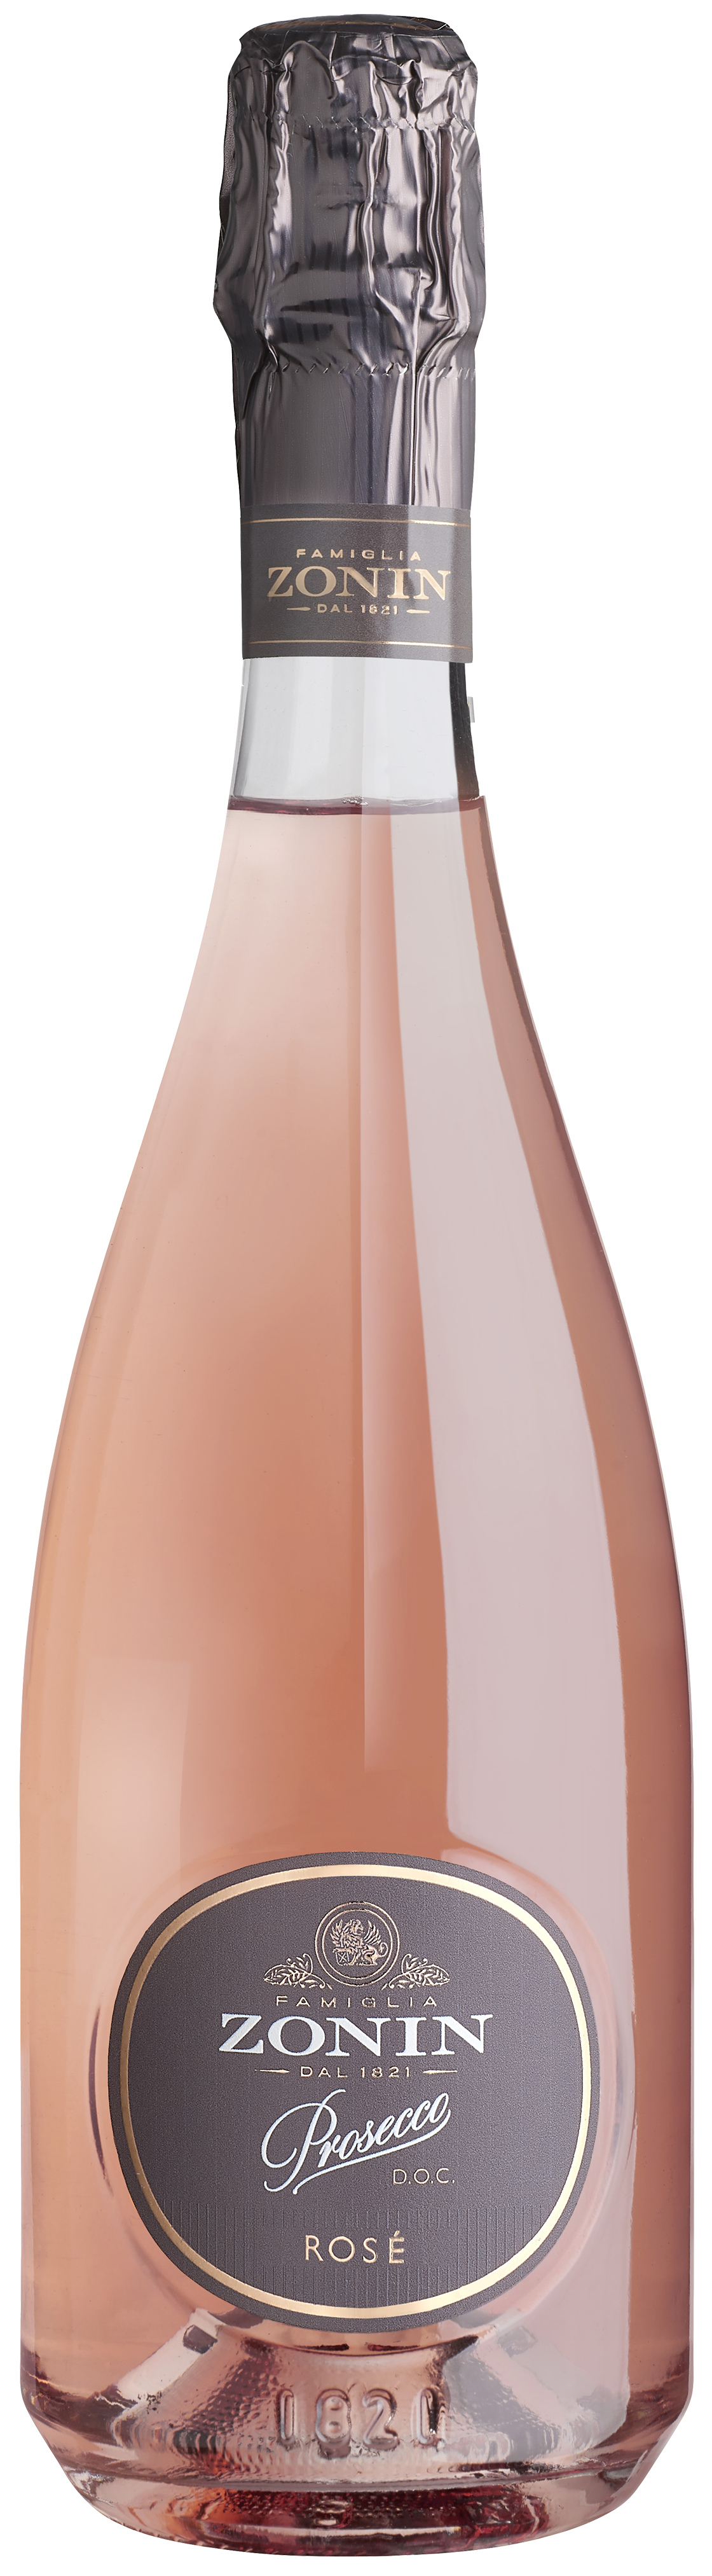 Bild på Zonin Prosecco 1821 Rosé 2020